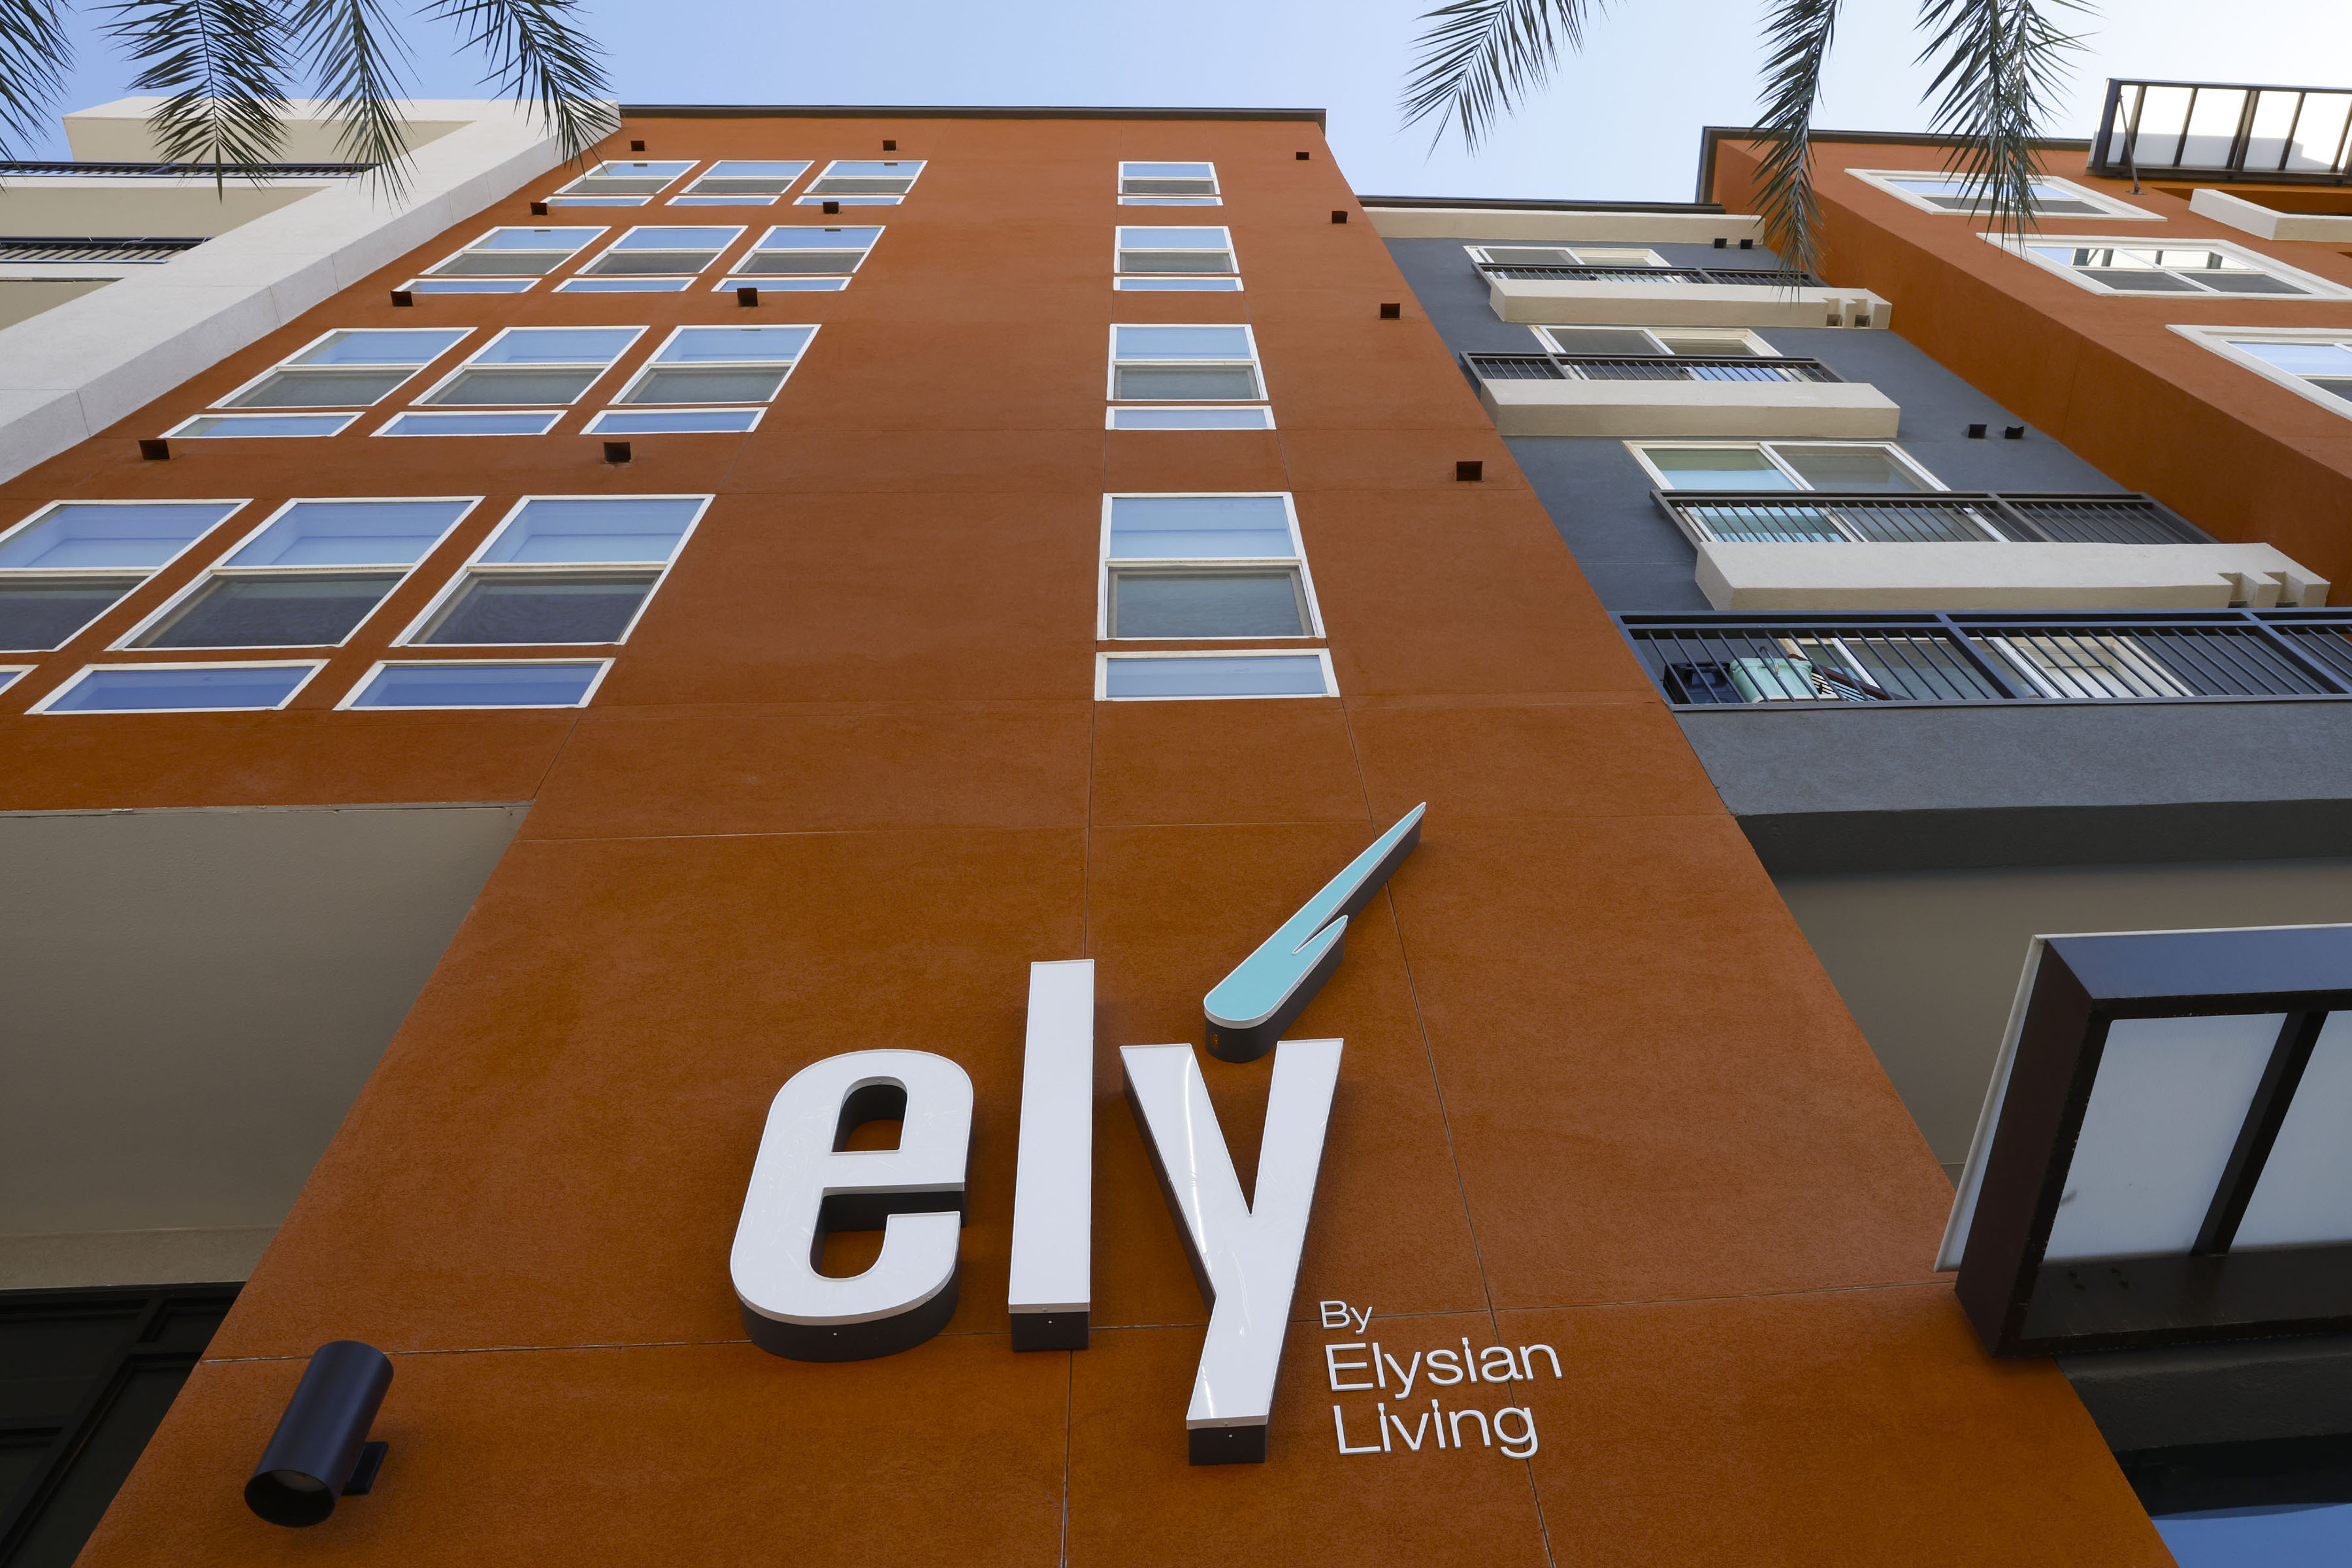 Kompleks apartemen Las Vegas yang didukung mendiang Tony Hsieh memiliki nama baru